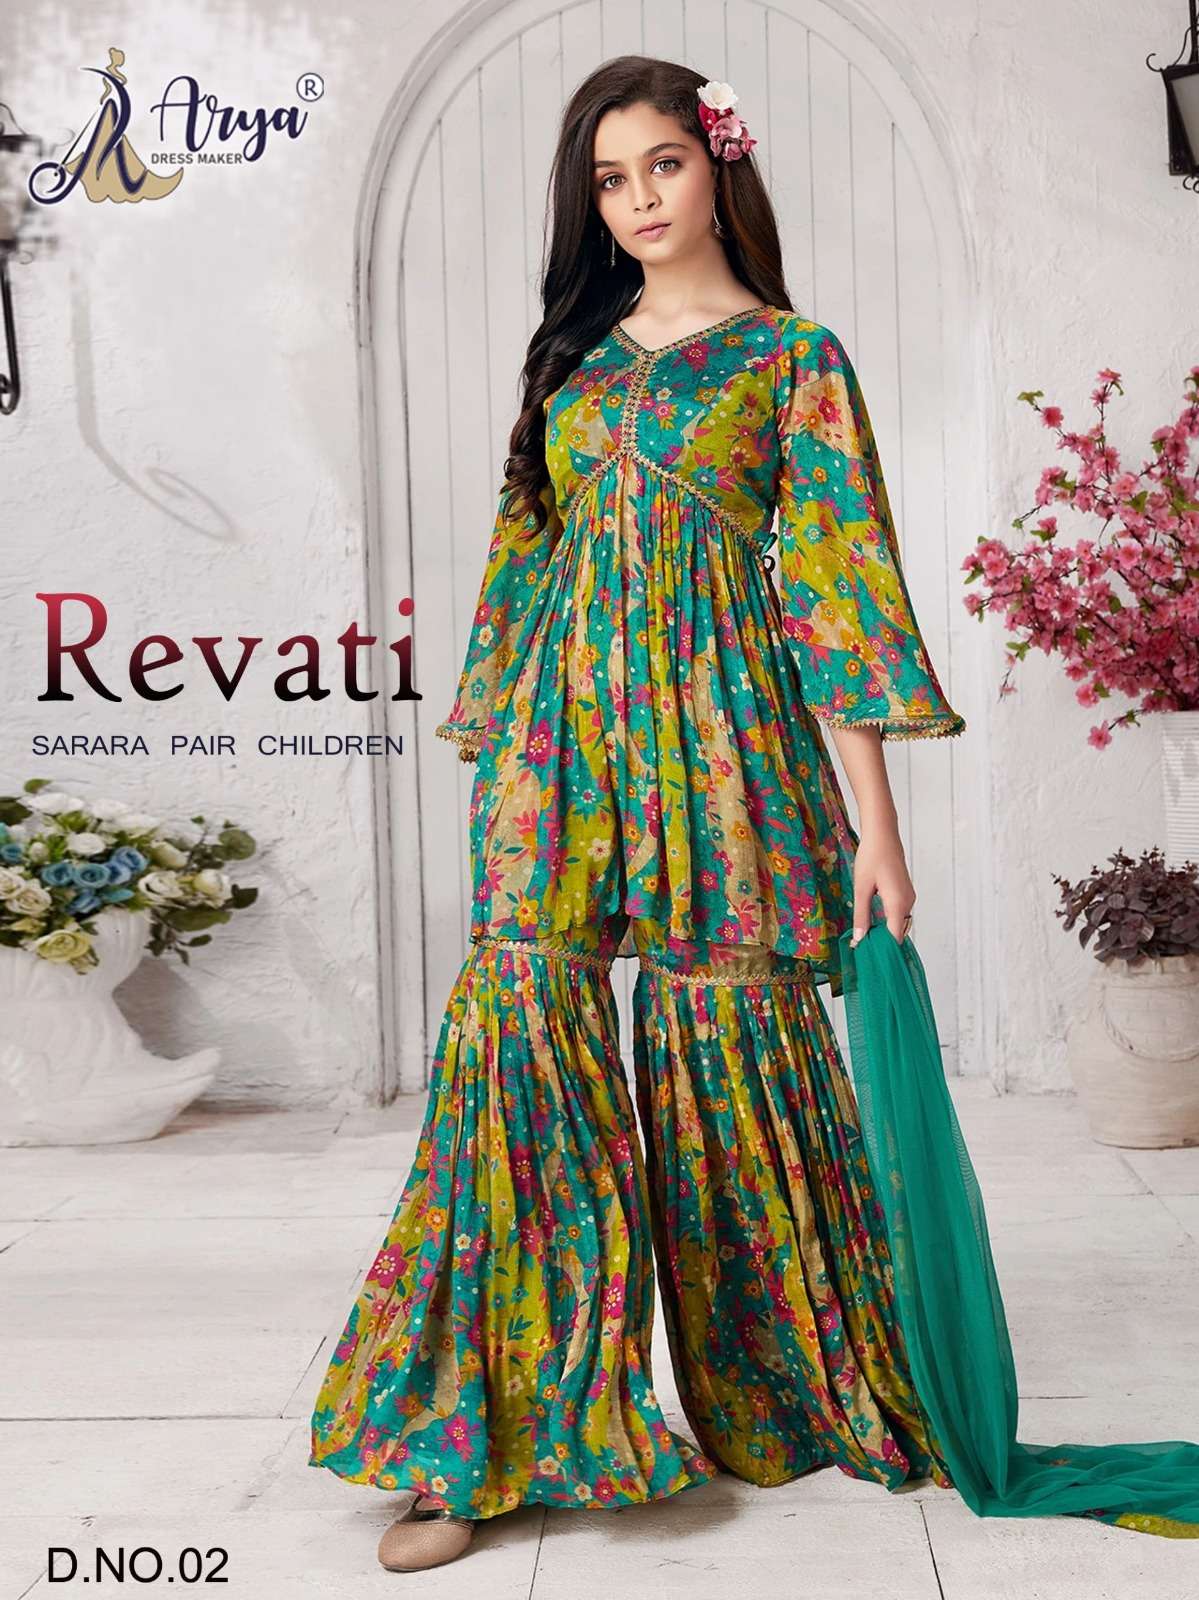 Buy Now Rafta Green Poli Reyon New Trendy Beautiful Western Frock For Women  Wear At Arya Dress Maker